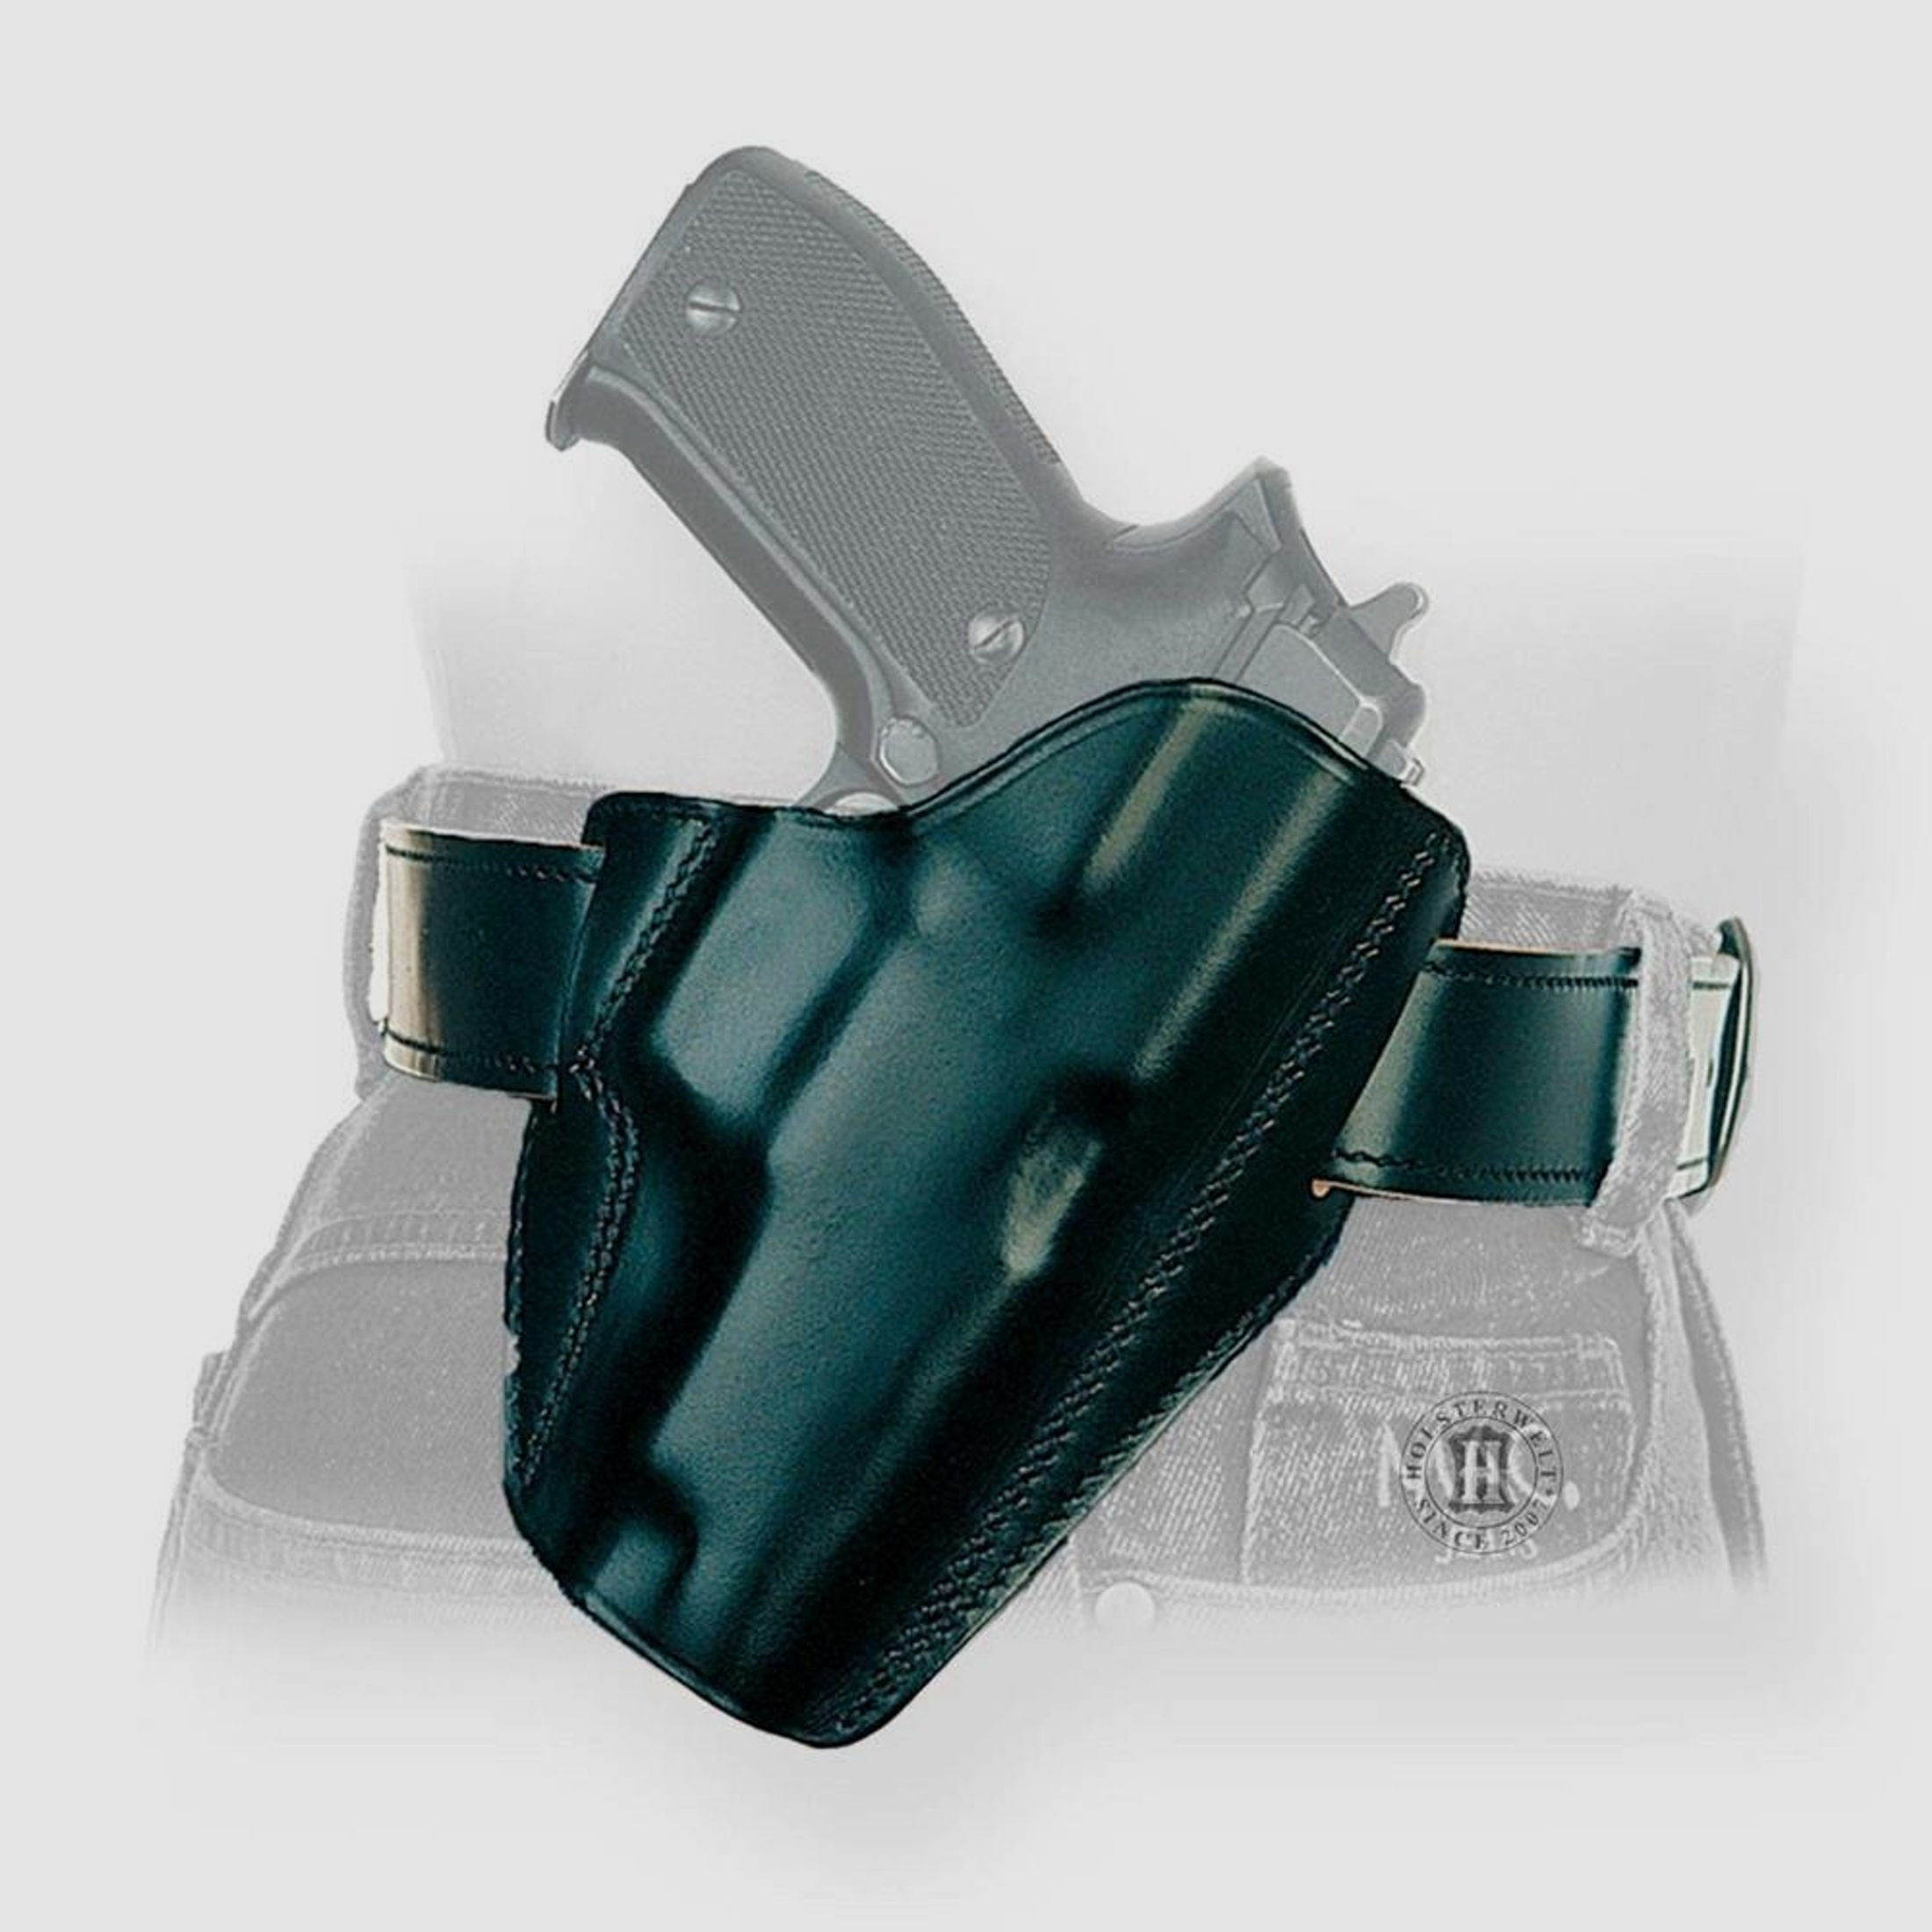 Schnellziehholster LIGHTNING "FBI" Glock 42-Linkshänder-Braun